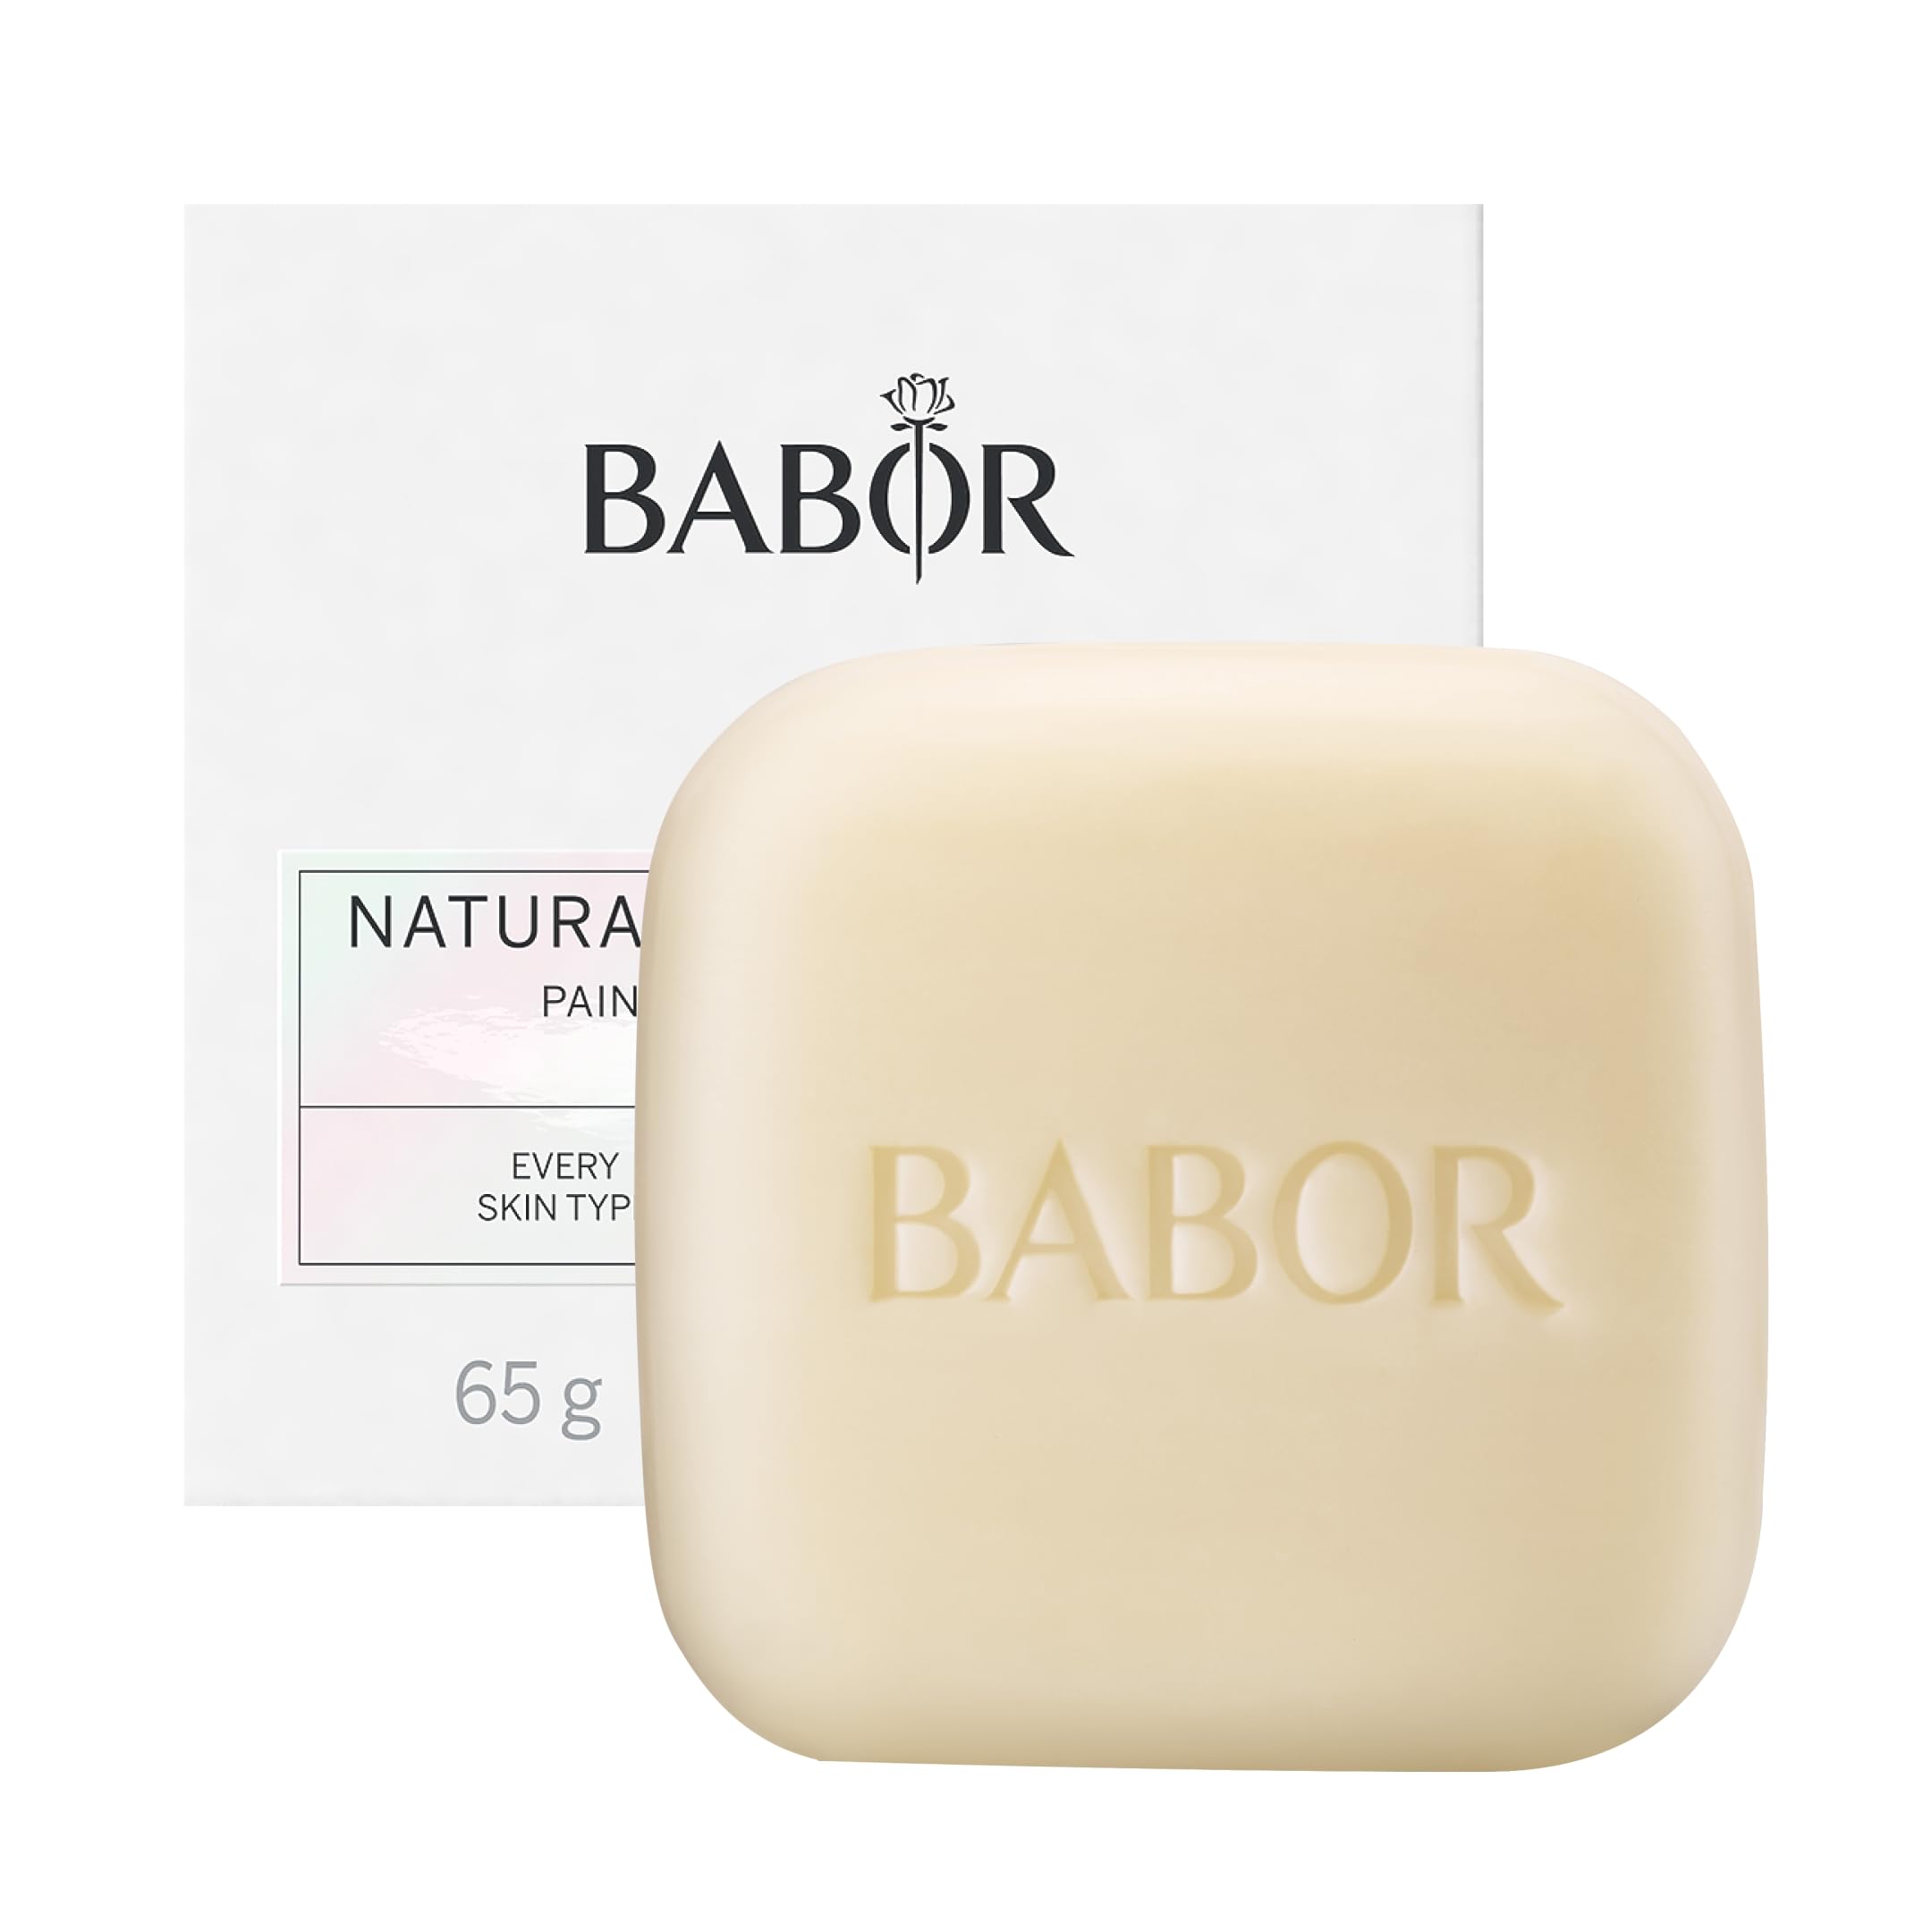 BABOR Natural Cleansing Bar für ölige Haut und Mischhaut, Feste Gesichtsreinigung für einen geklärten Teint, Mit Aloe Vera und Baobaböl, mit Aufbwahrungsdose, 1 x 65g